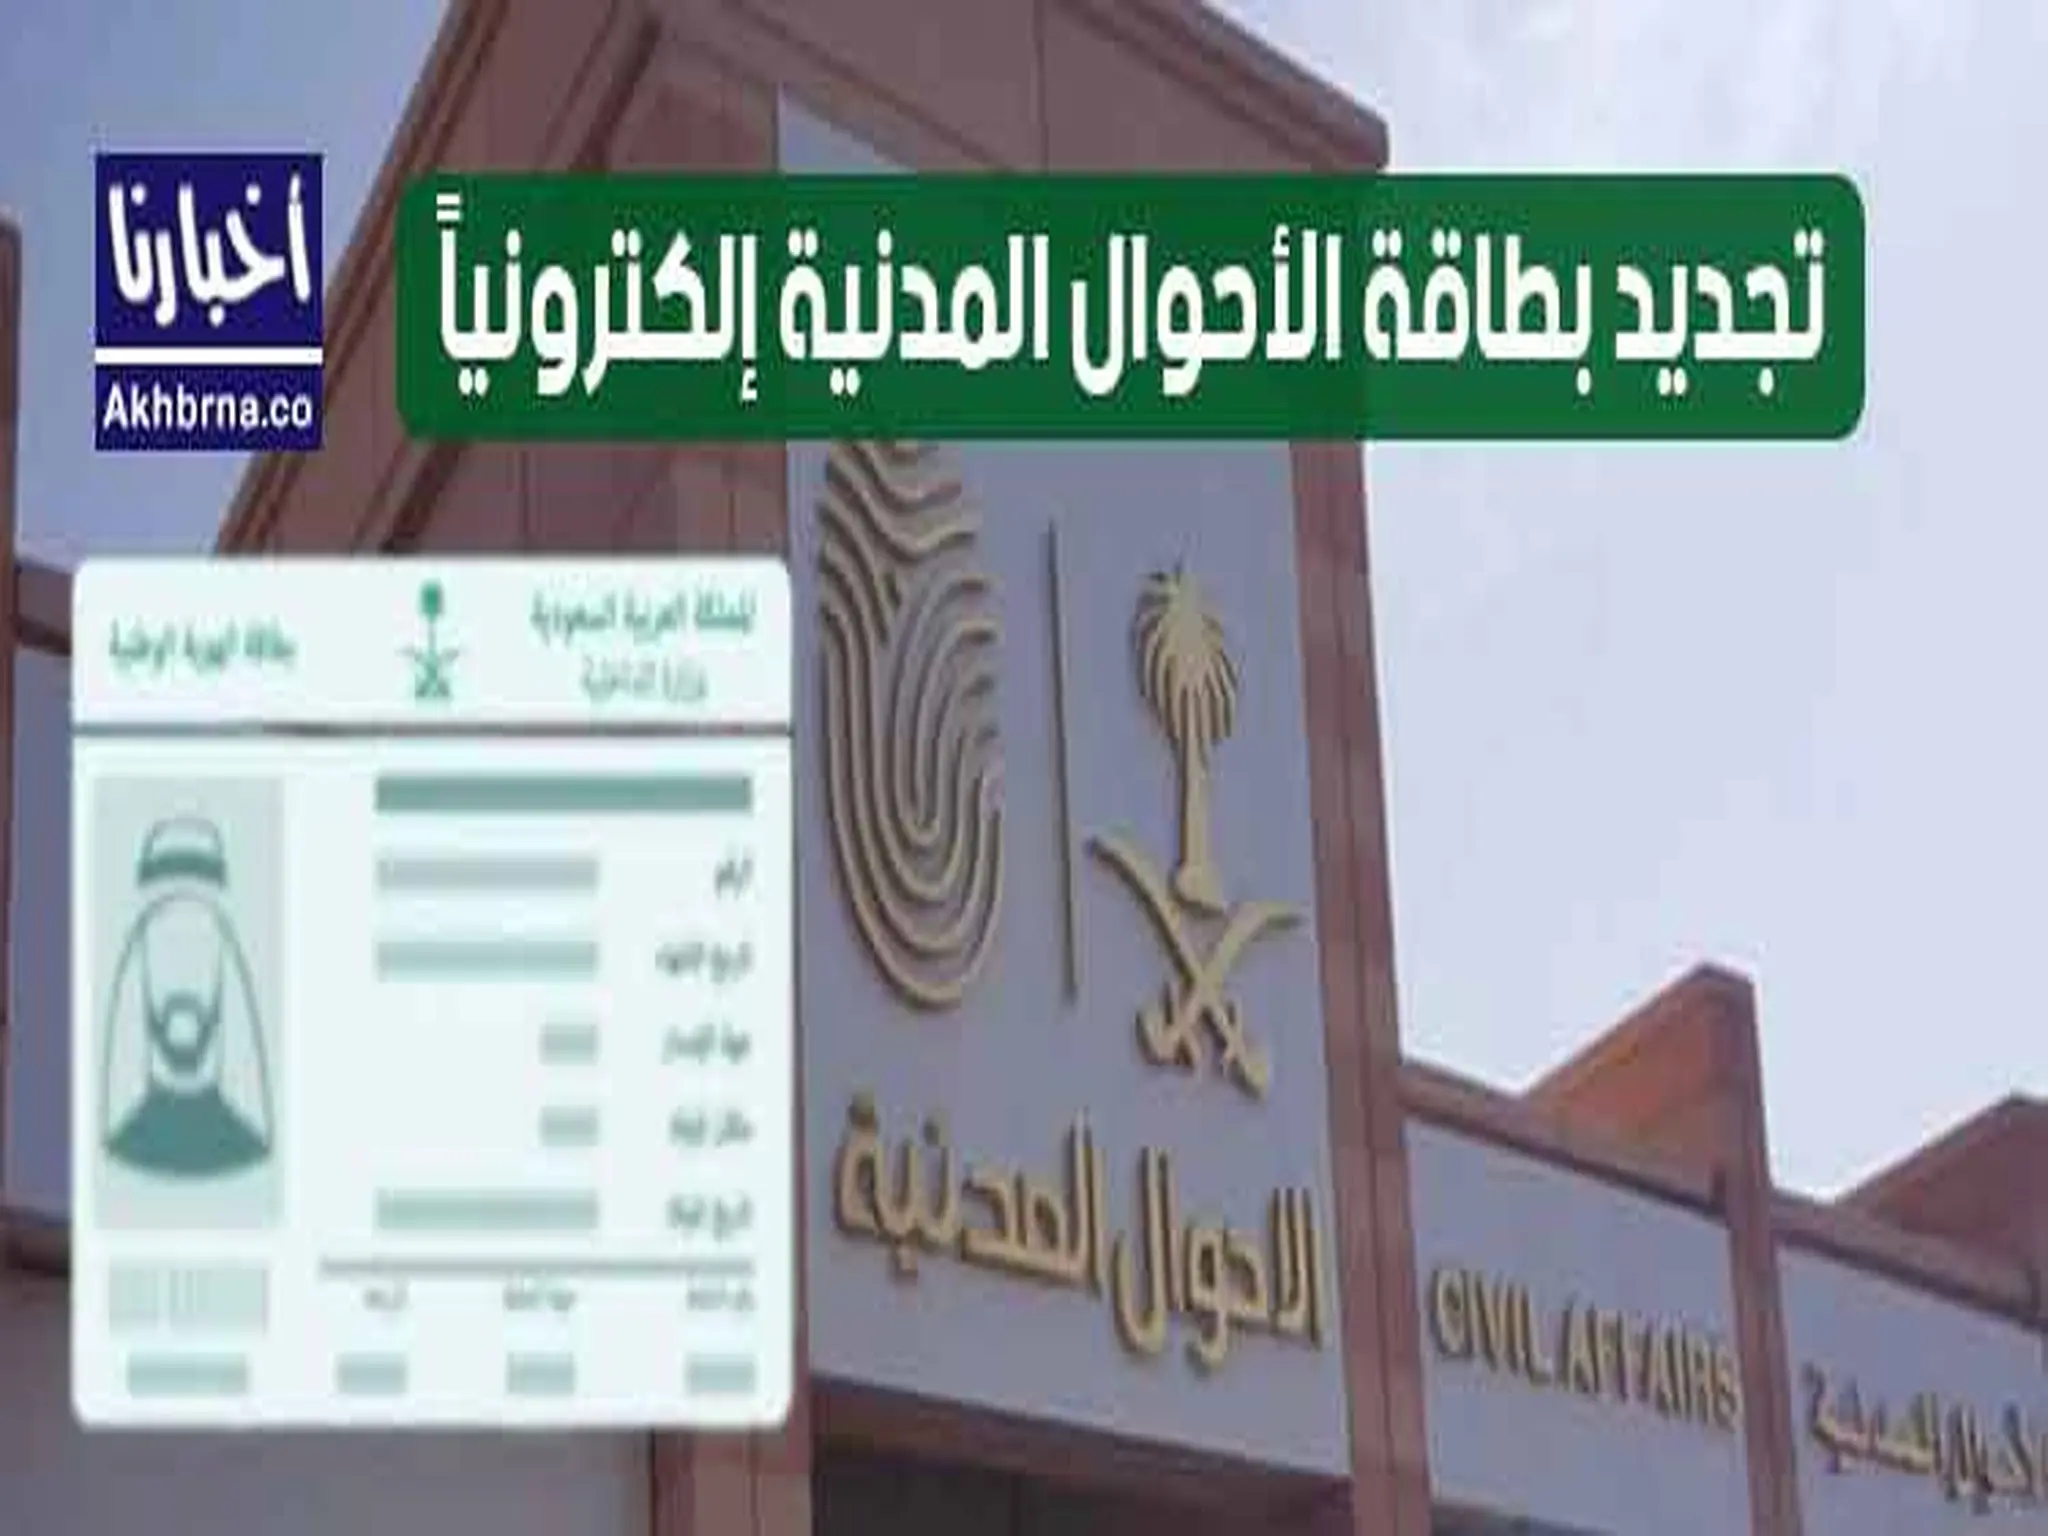 طريقة تجديد بطاقة الأحوال المدنية 1441 في السعودية 2021 بكُل سهولة